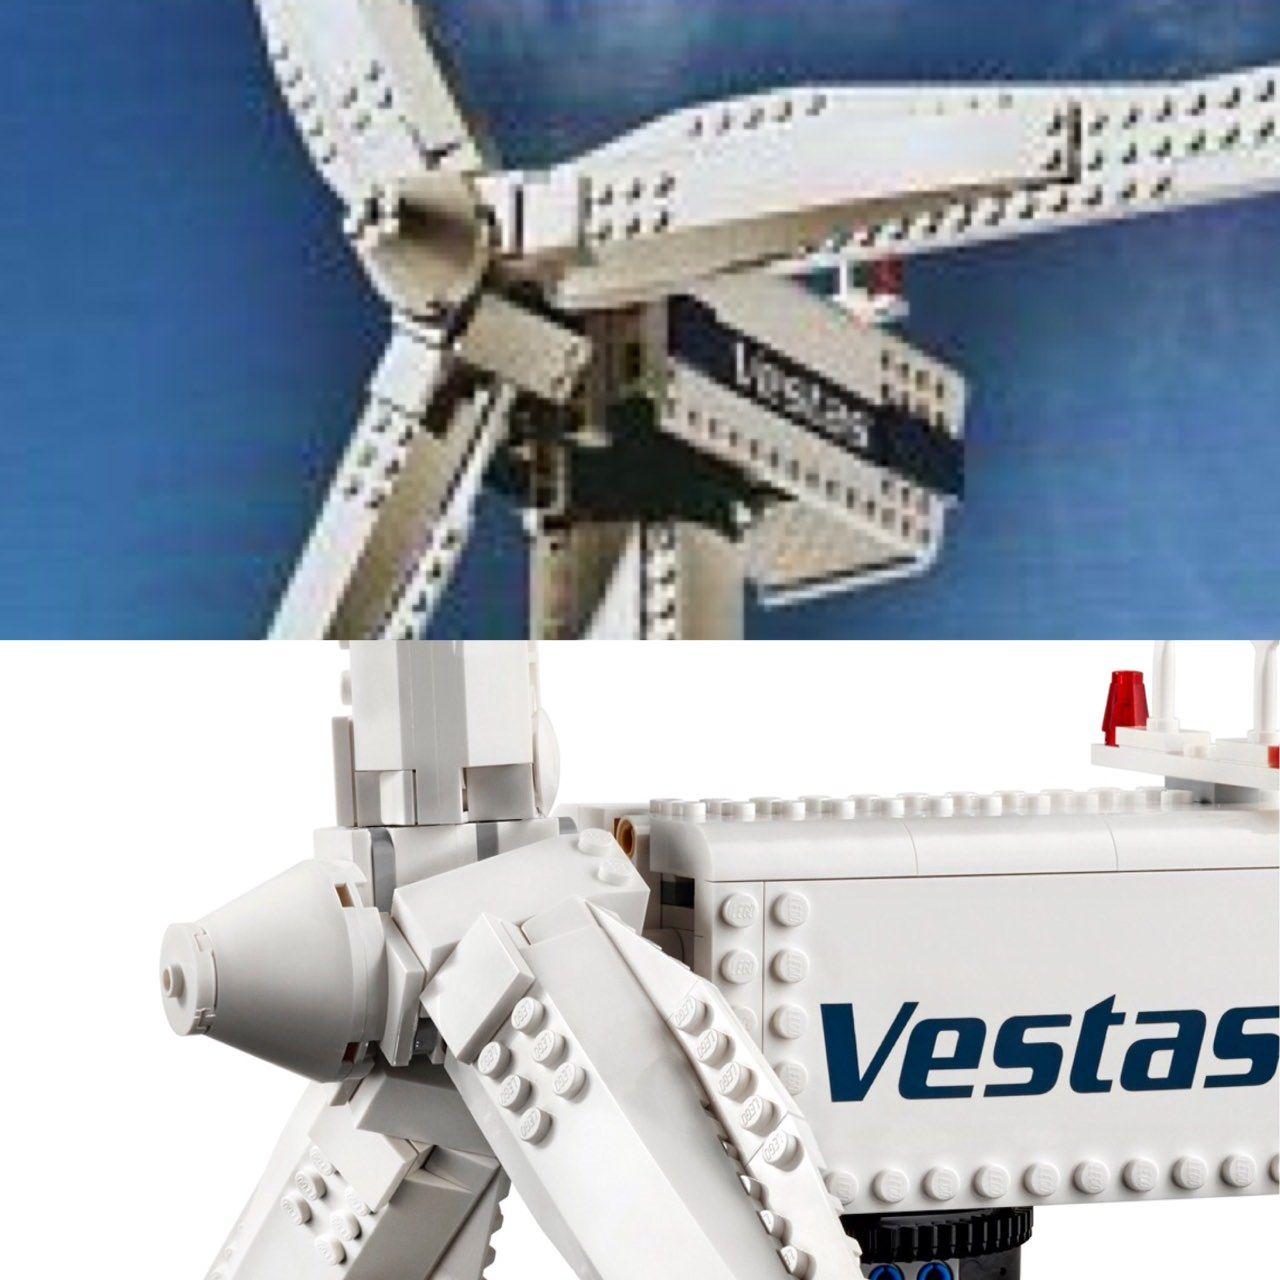 Vestas Logo - Vestas Wind Turbine: From 4999 to 10268.com